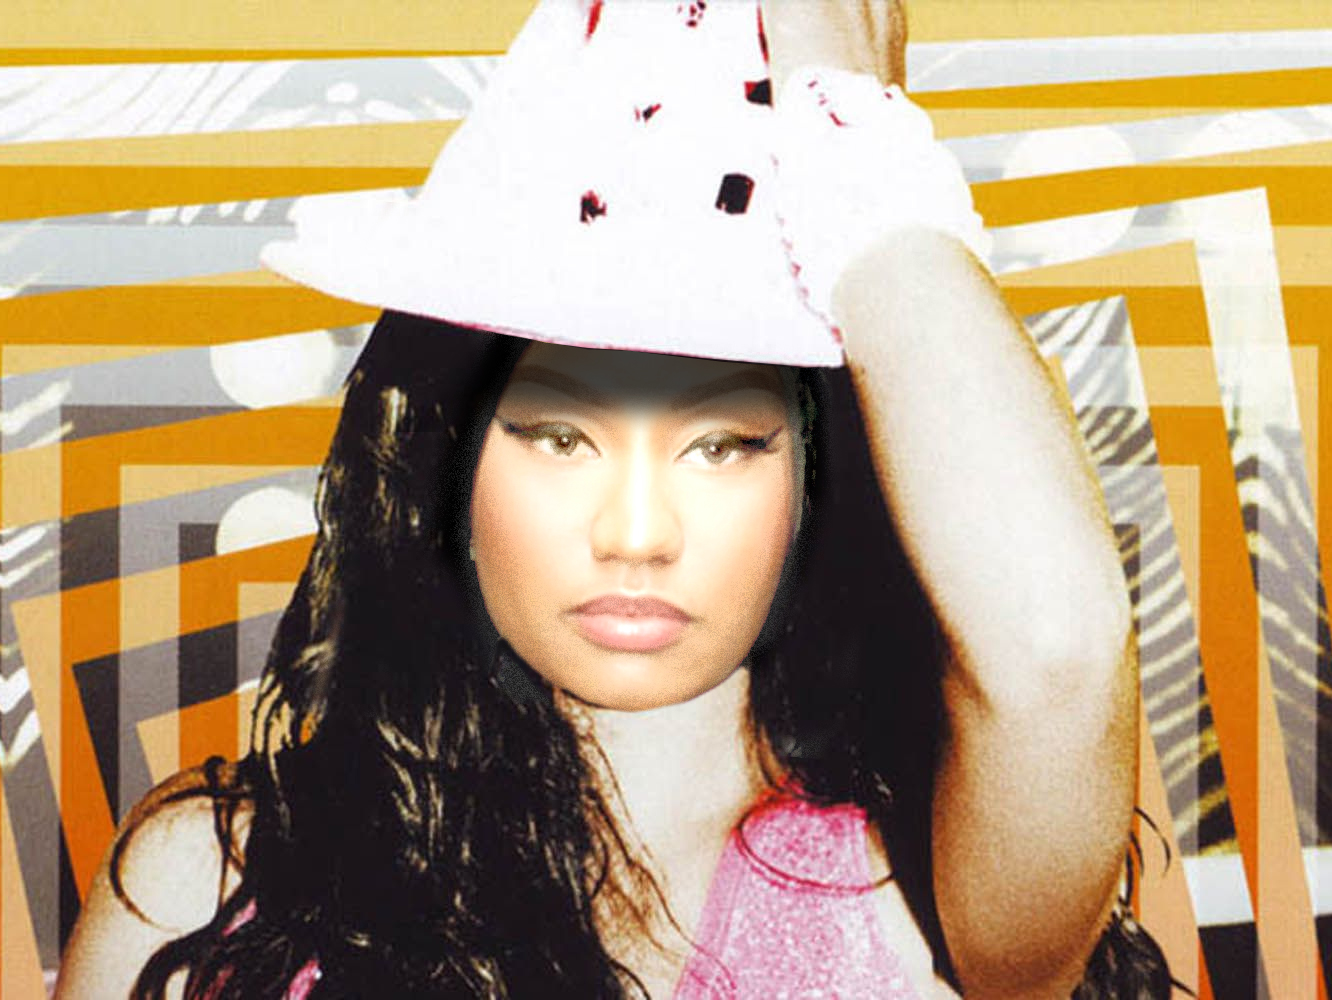  Nicki Minaj sabotea los resultados de ‘Queen’ perdiendo los nervios en Twitter